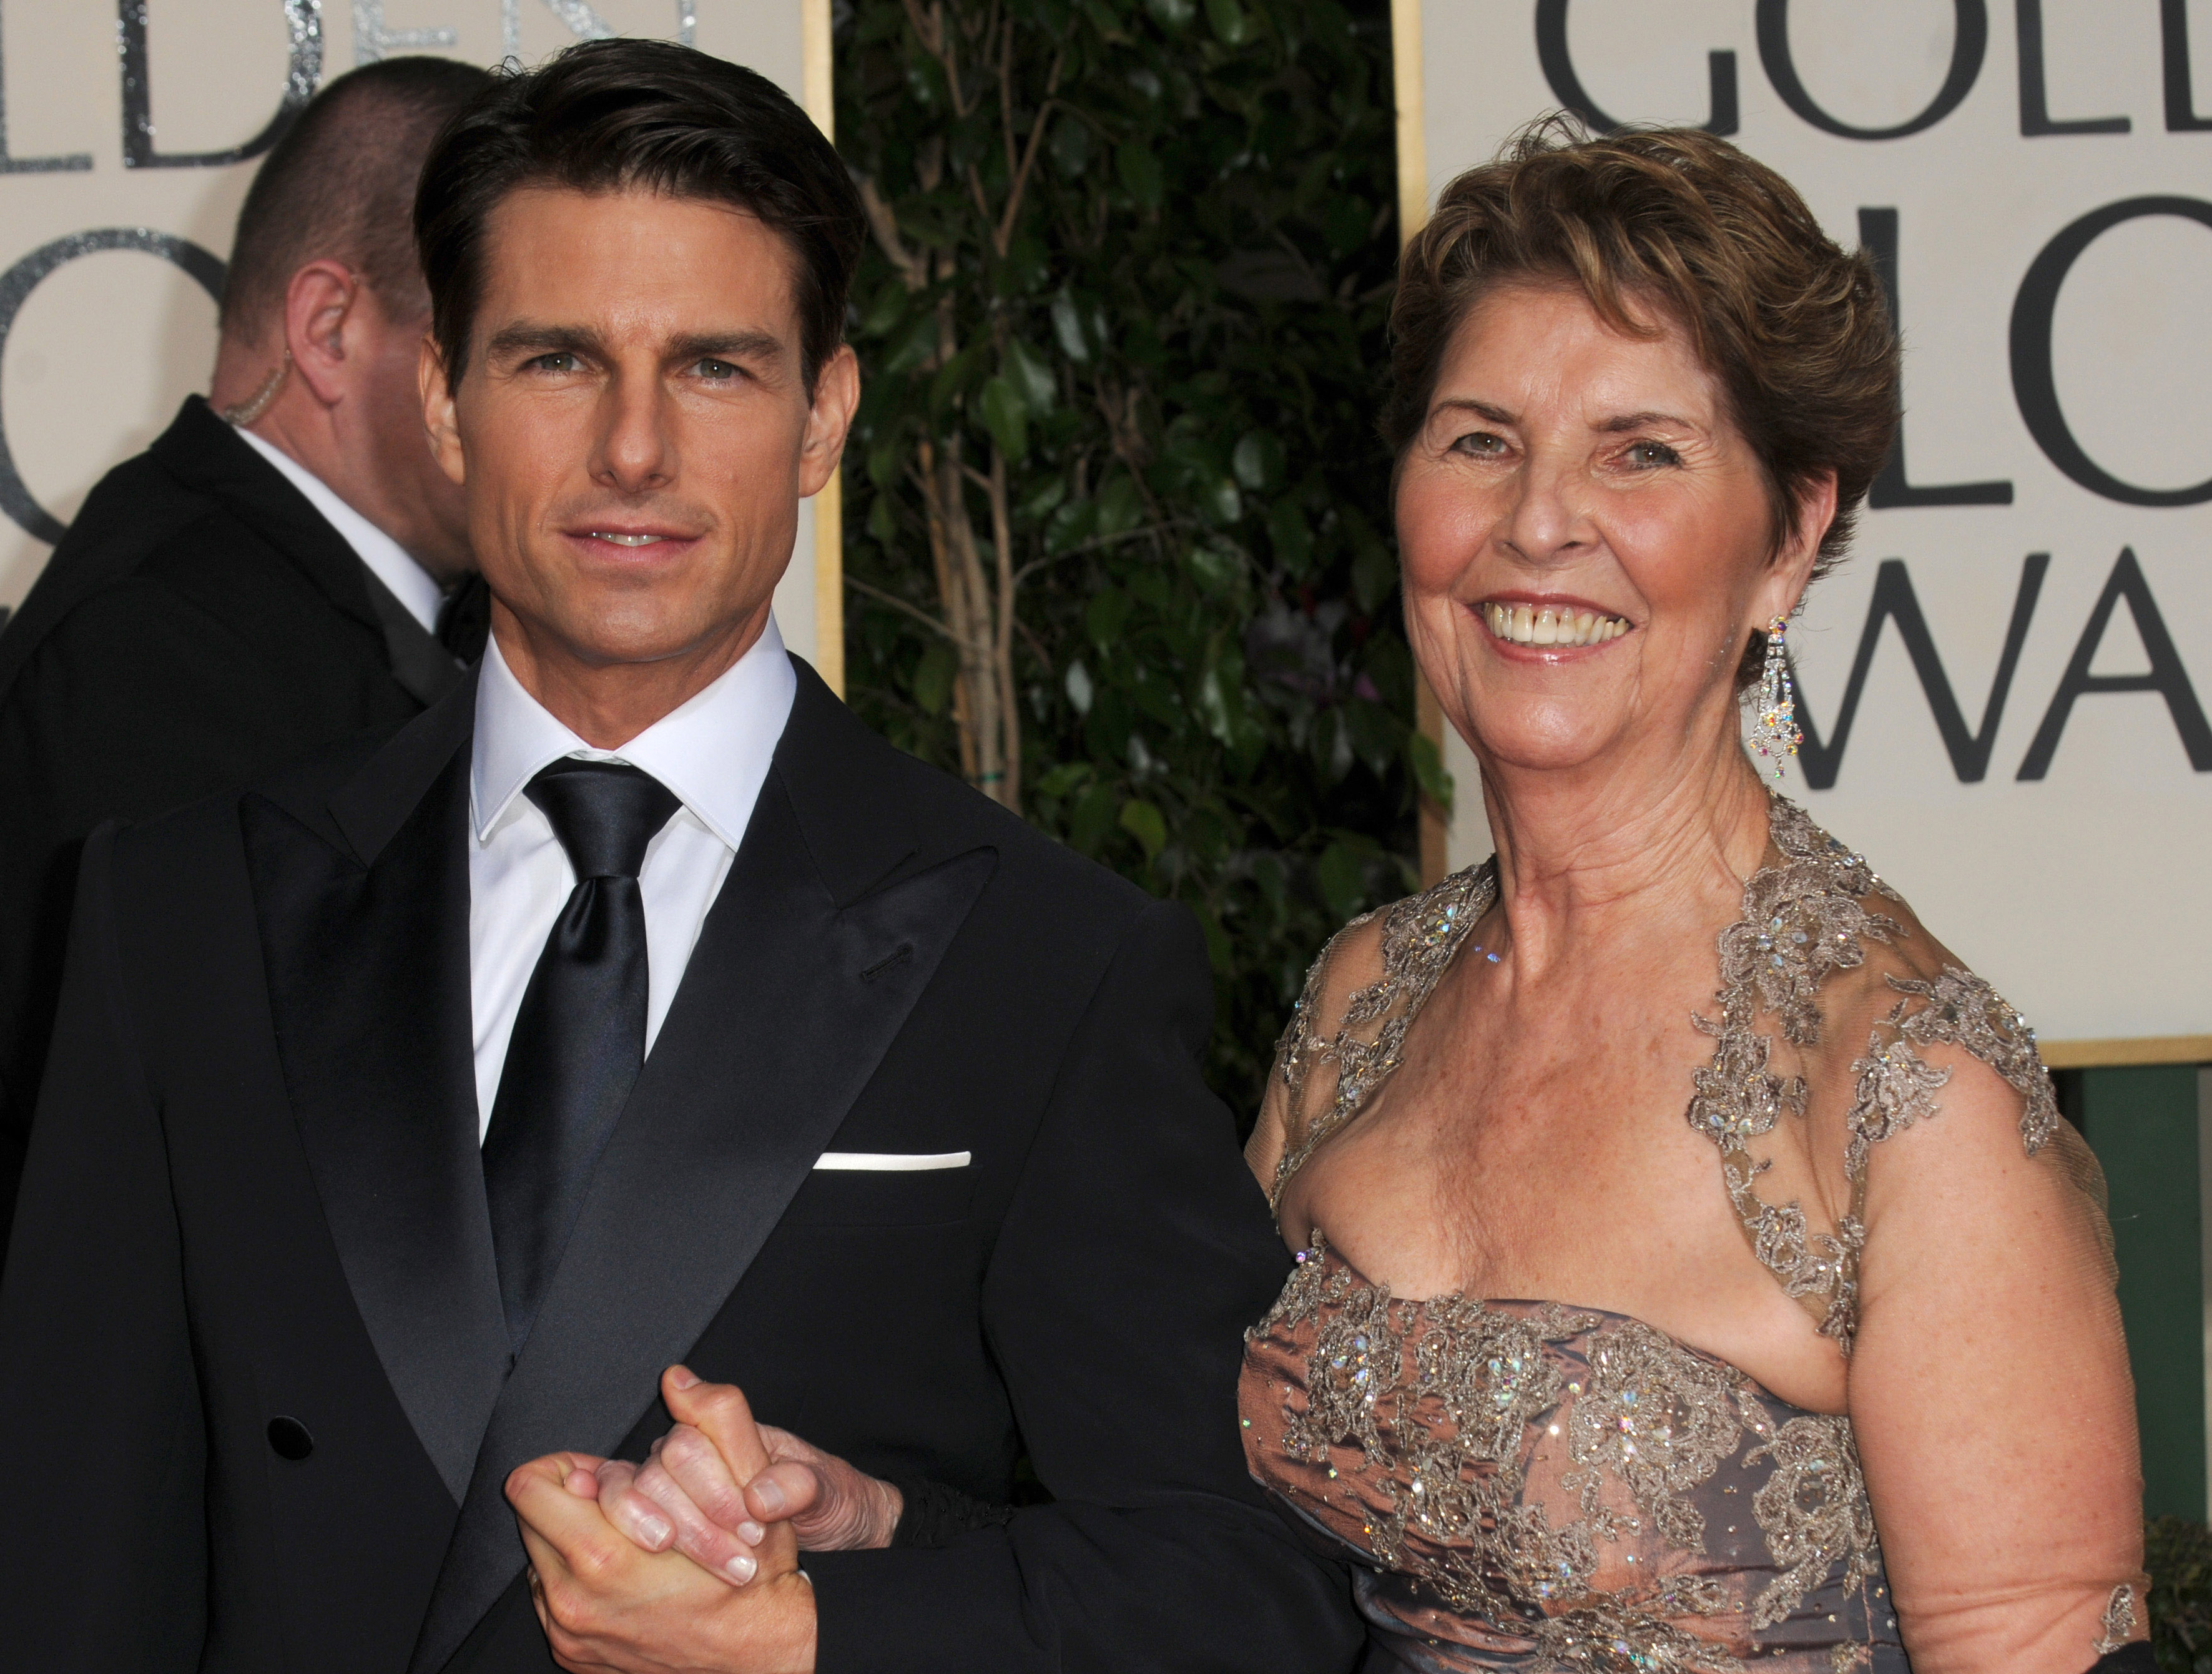 Tom Cruise et Mary Lee Pfeiffer lors de la 66e cérémonie annuelle des Golden Globe Awards à Hollywood, 2009 | Source : Getty Images